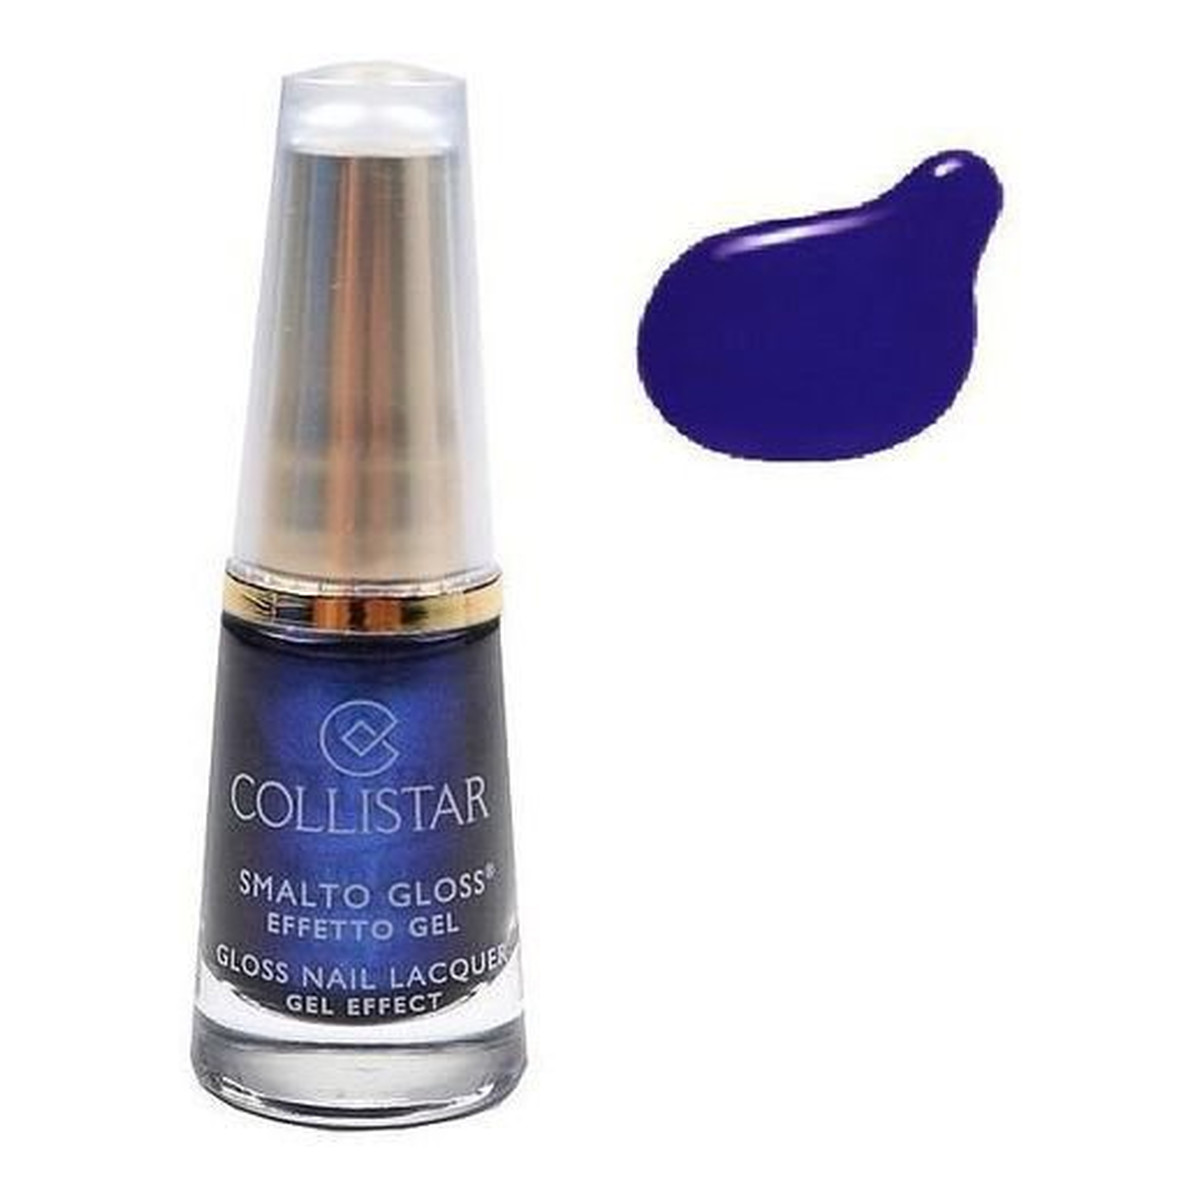 Collistar Gloss Nail Lacquer Gel Effect Żelowy lakier do paznokci 6ml